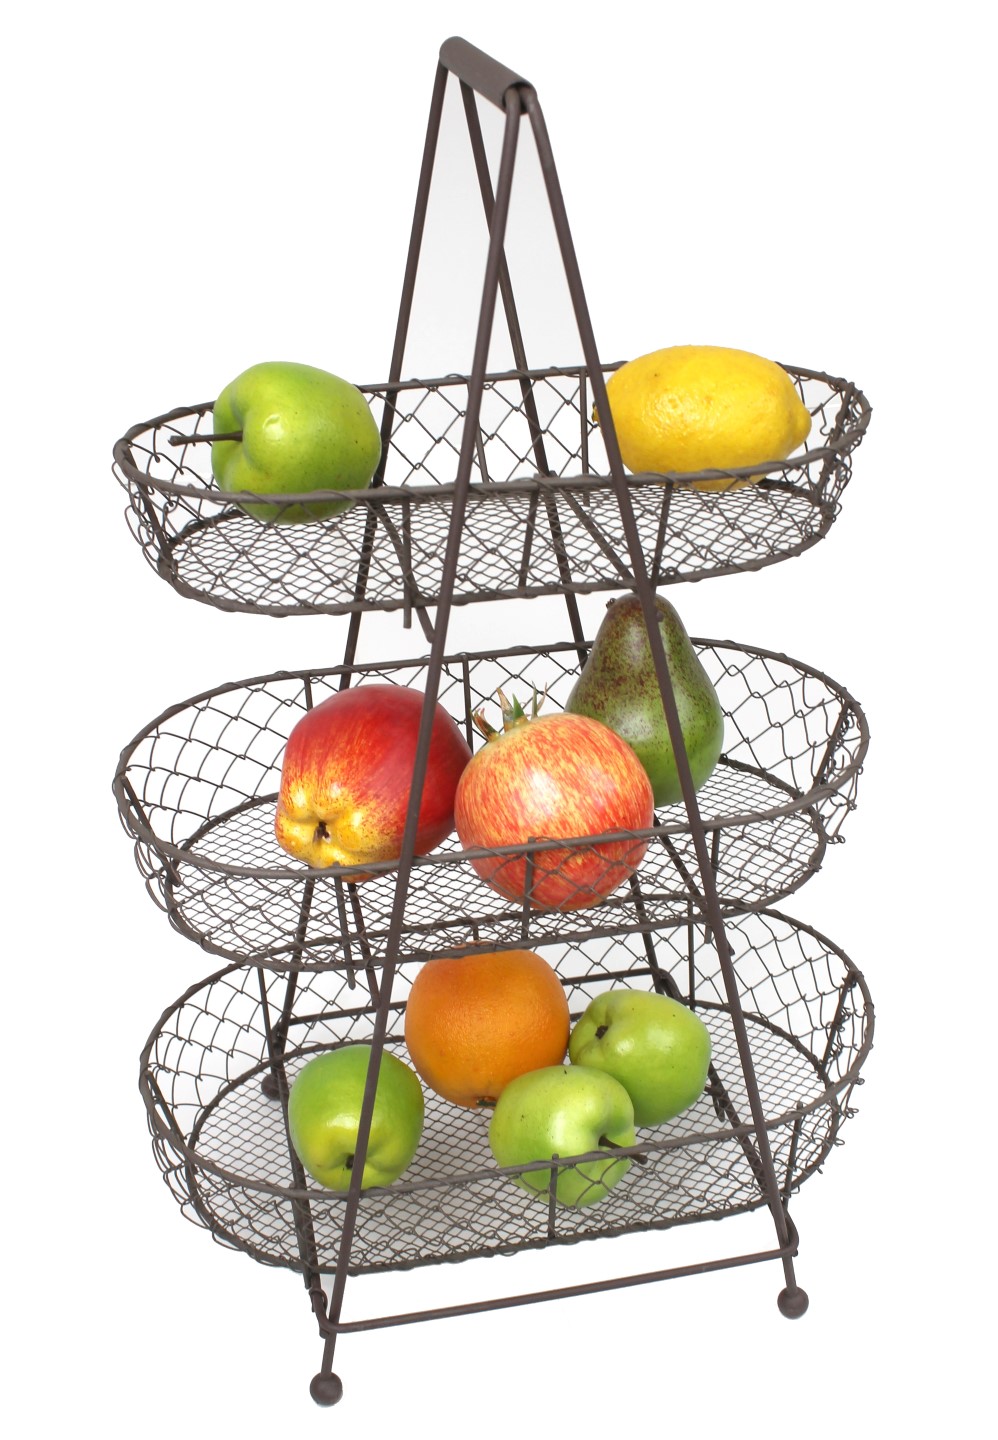 dekorative Alternative zu Gemüsehorde Varia Living Große Etagere als Aufbewahrungskorb für Obst und Gemüse in der Küche aus Metall in schwarz 3 stufiges Küchenregal Aufbewahrung Küche